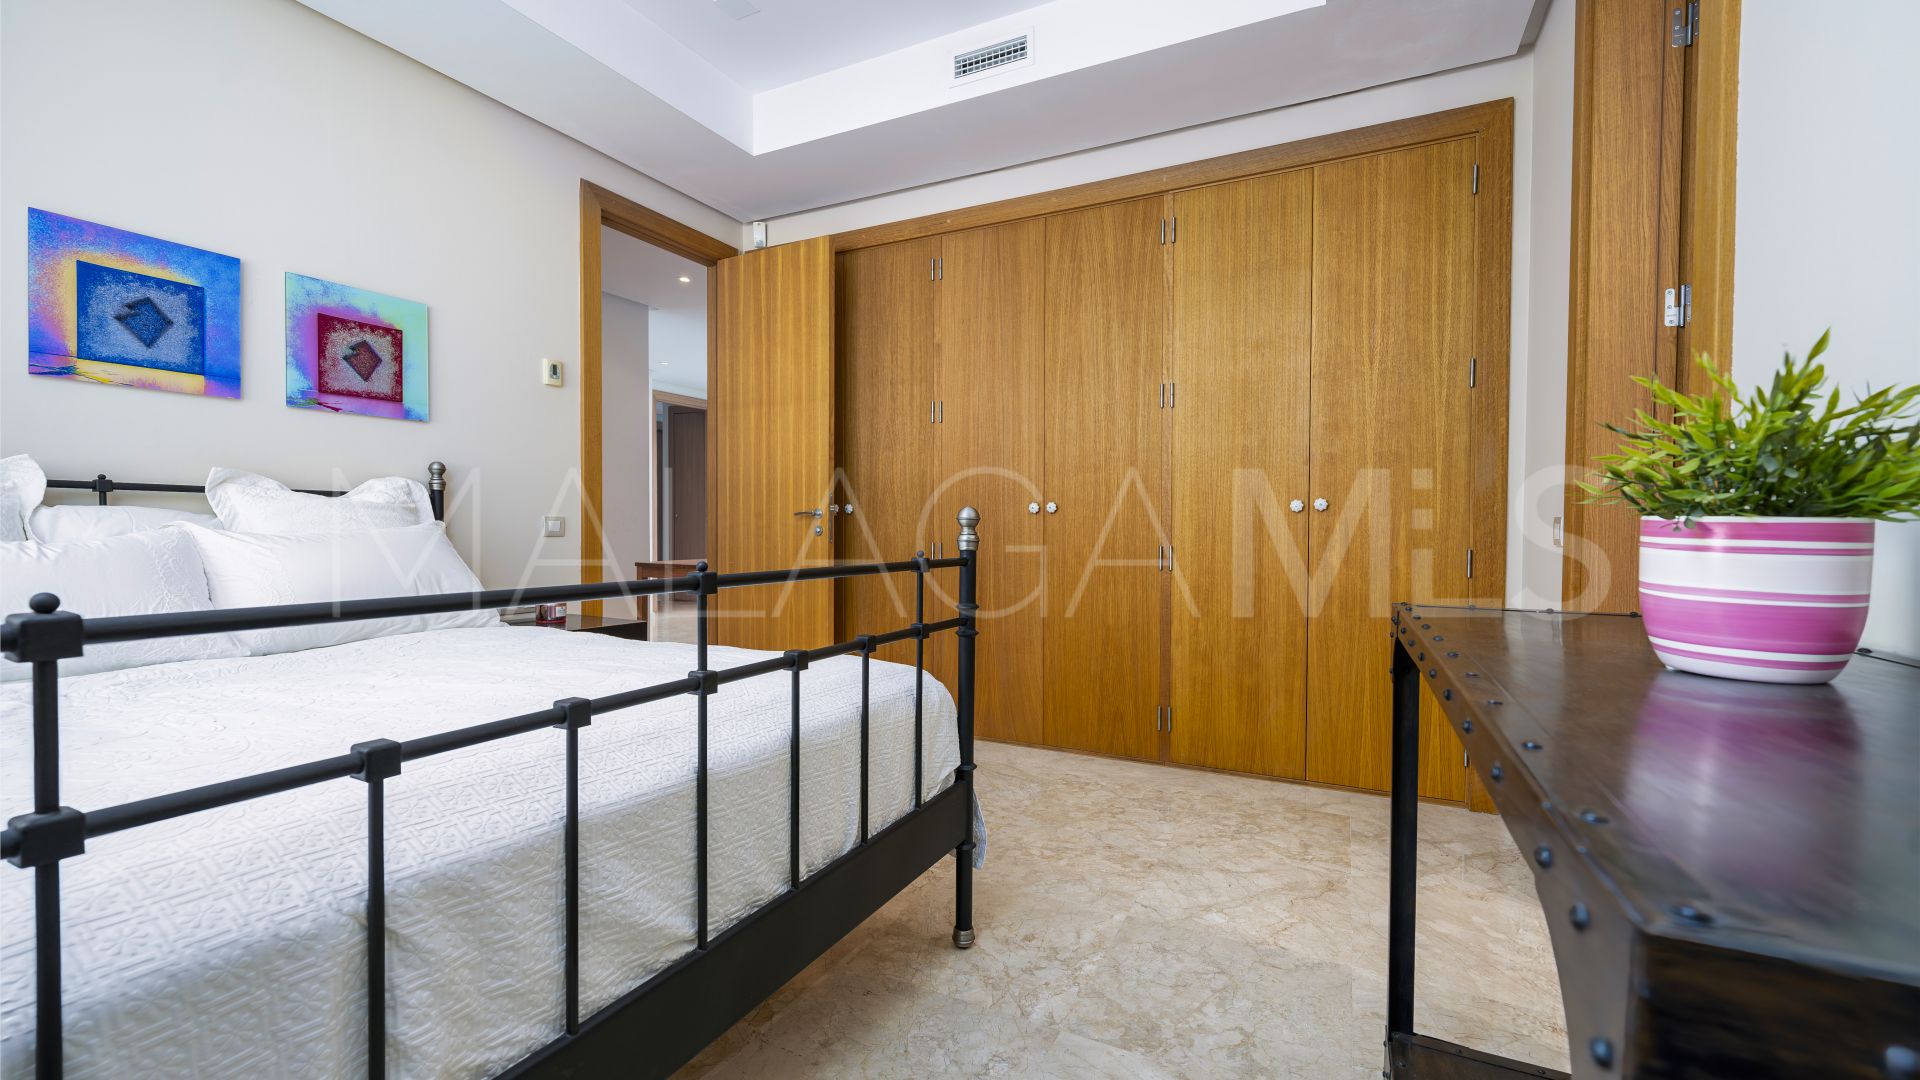 Buy Sierra Blanca 3 bedrooms apartment